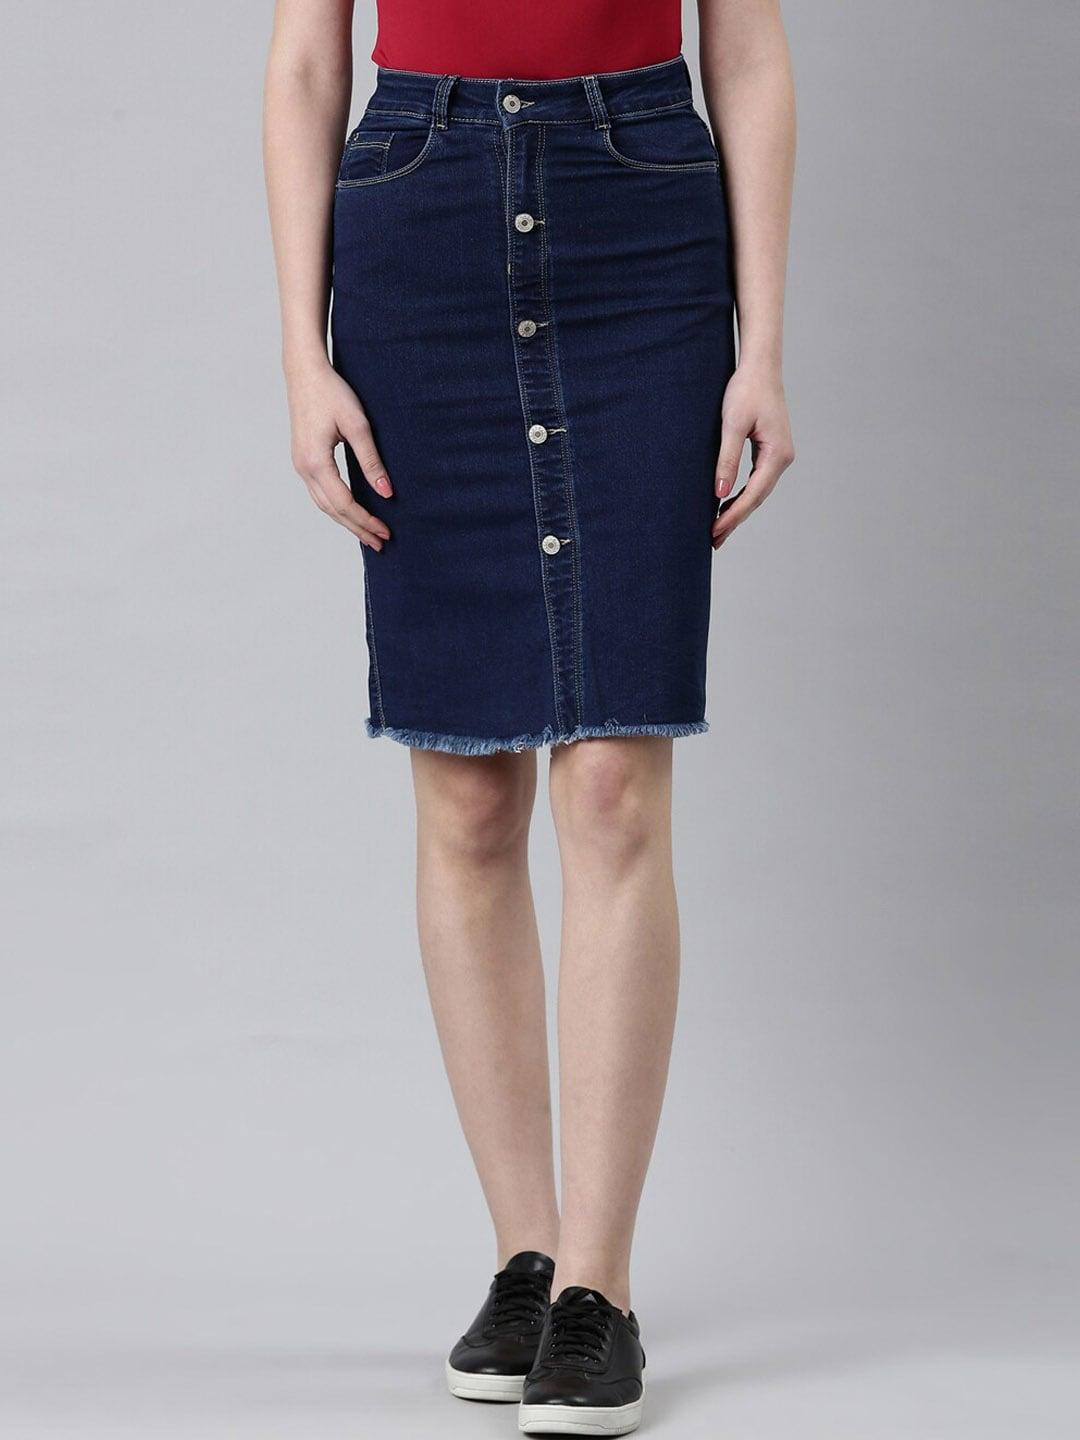 showoff-denim-above-knee-length-pencil-skirt